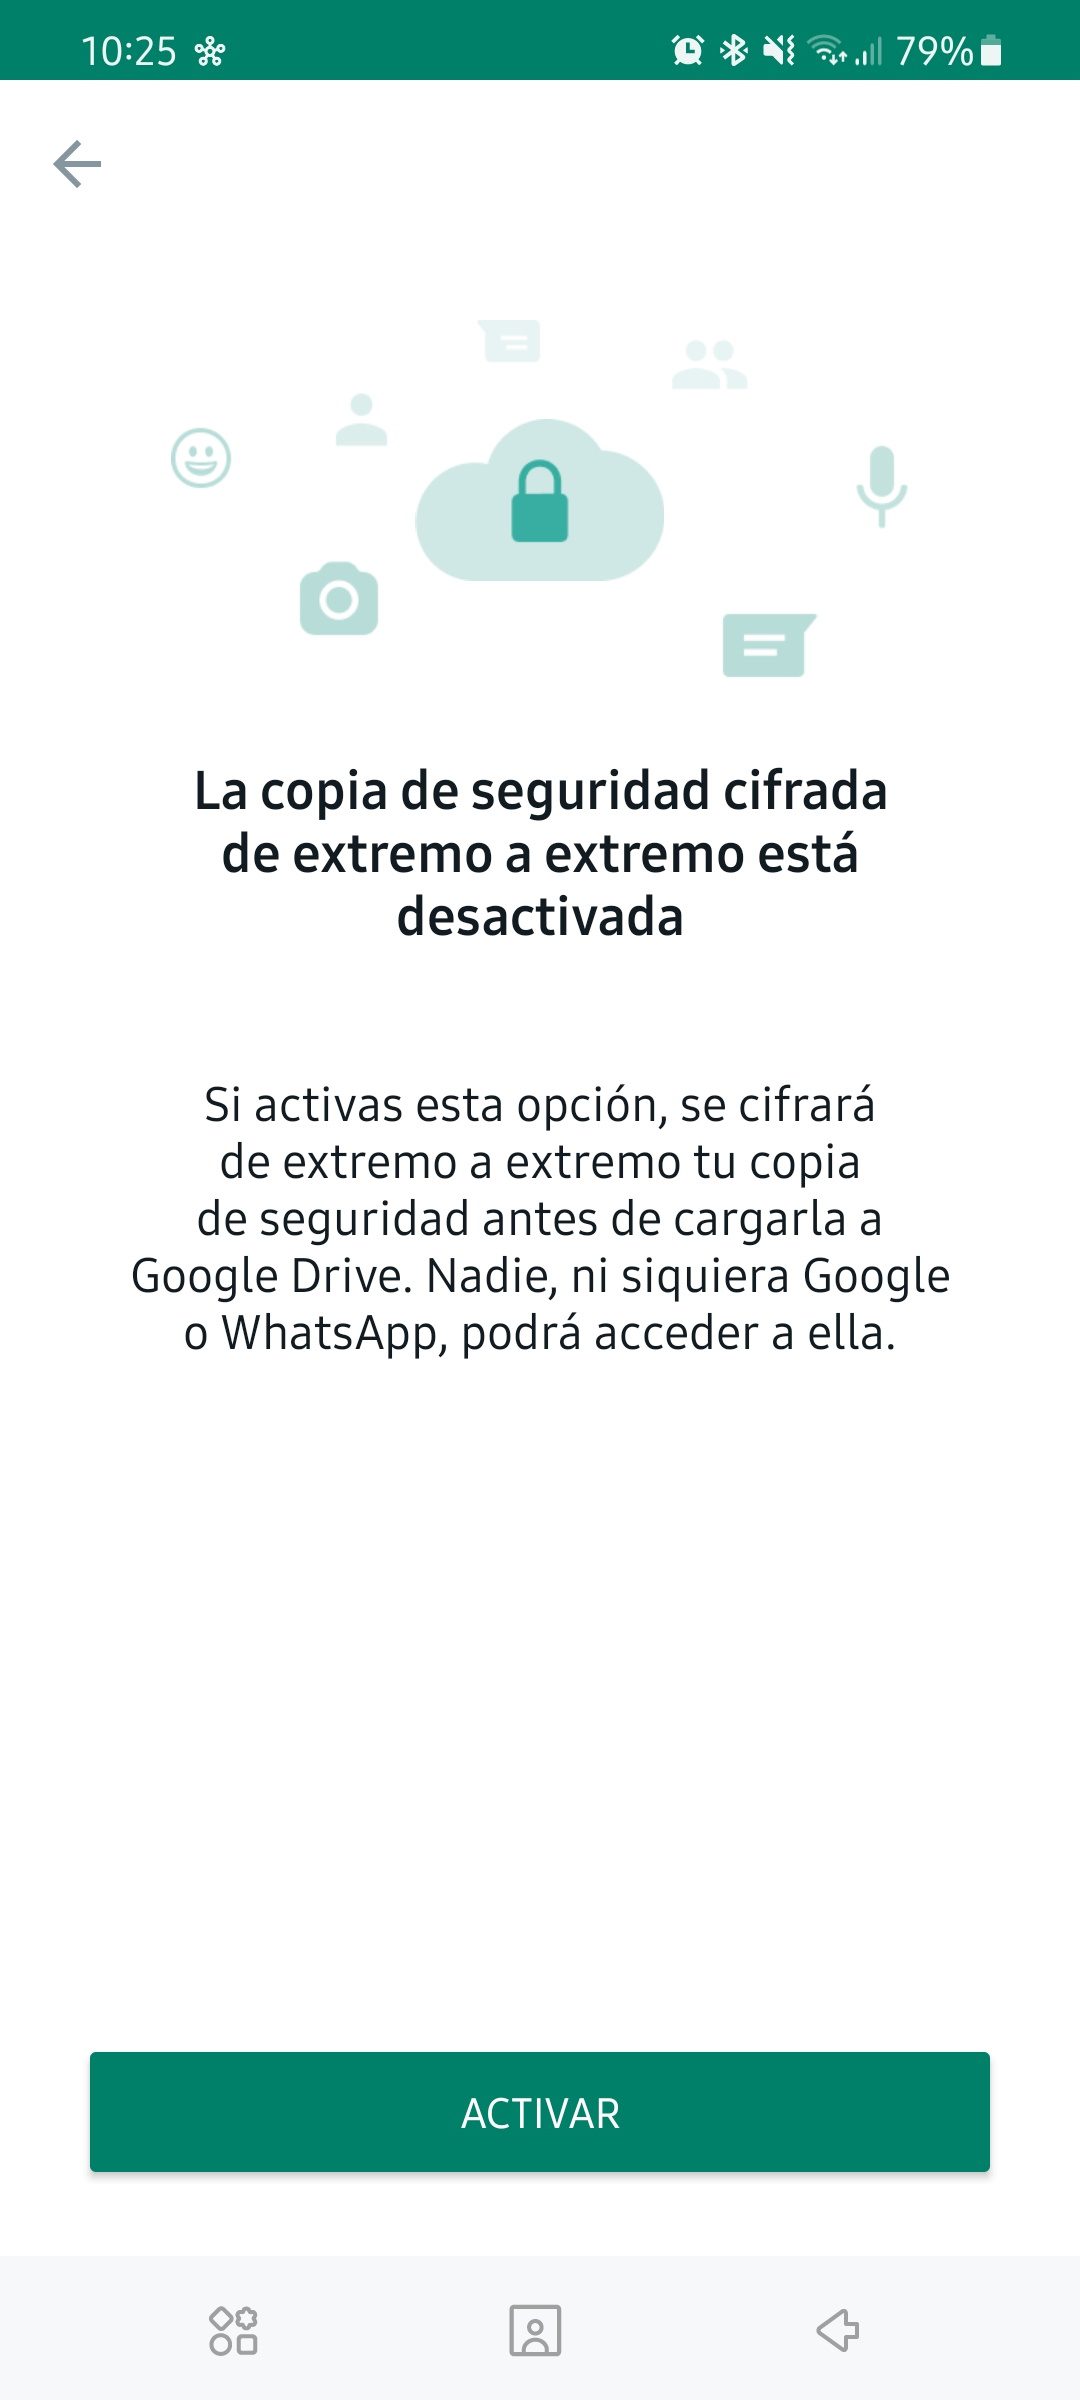 Cifrado extremo a extremo copias de seguridad WhatsApp